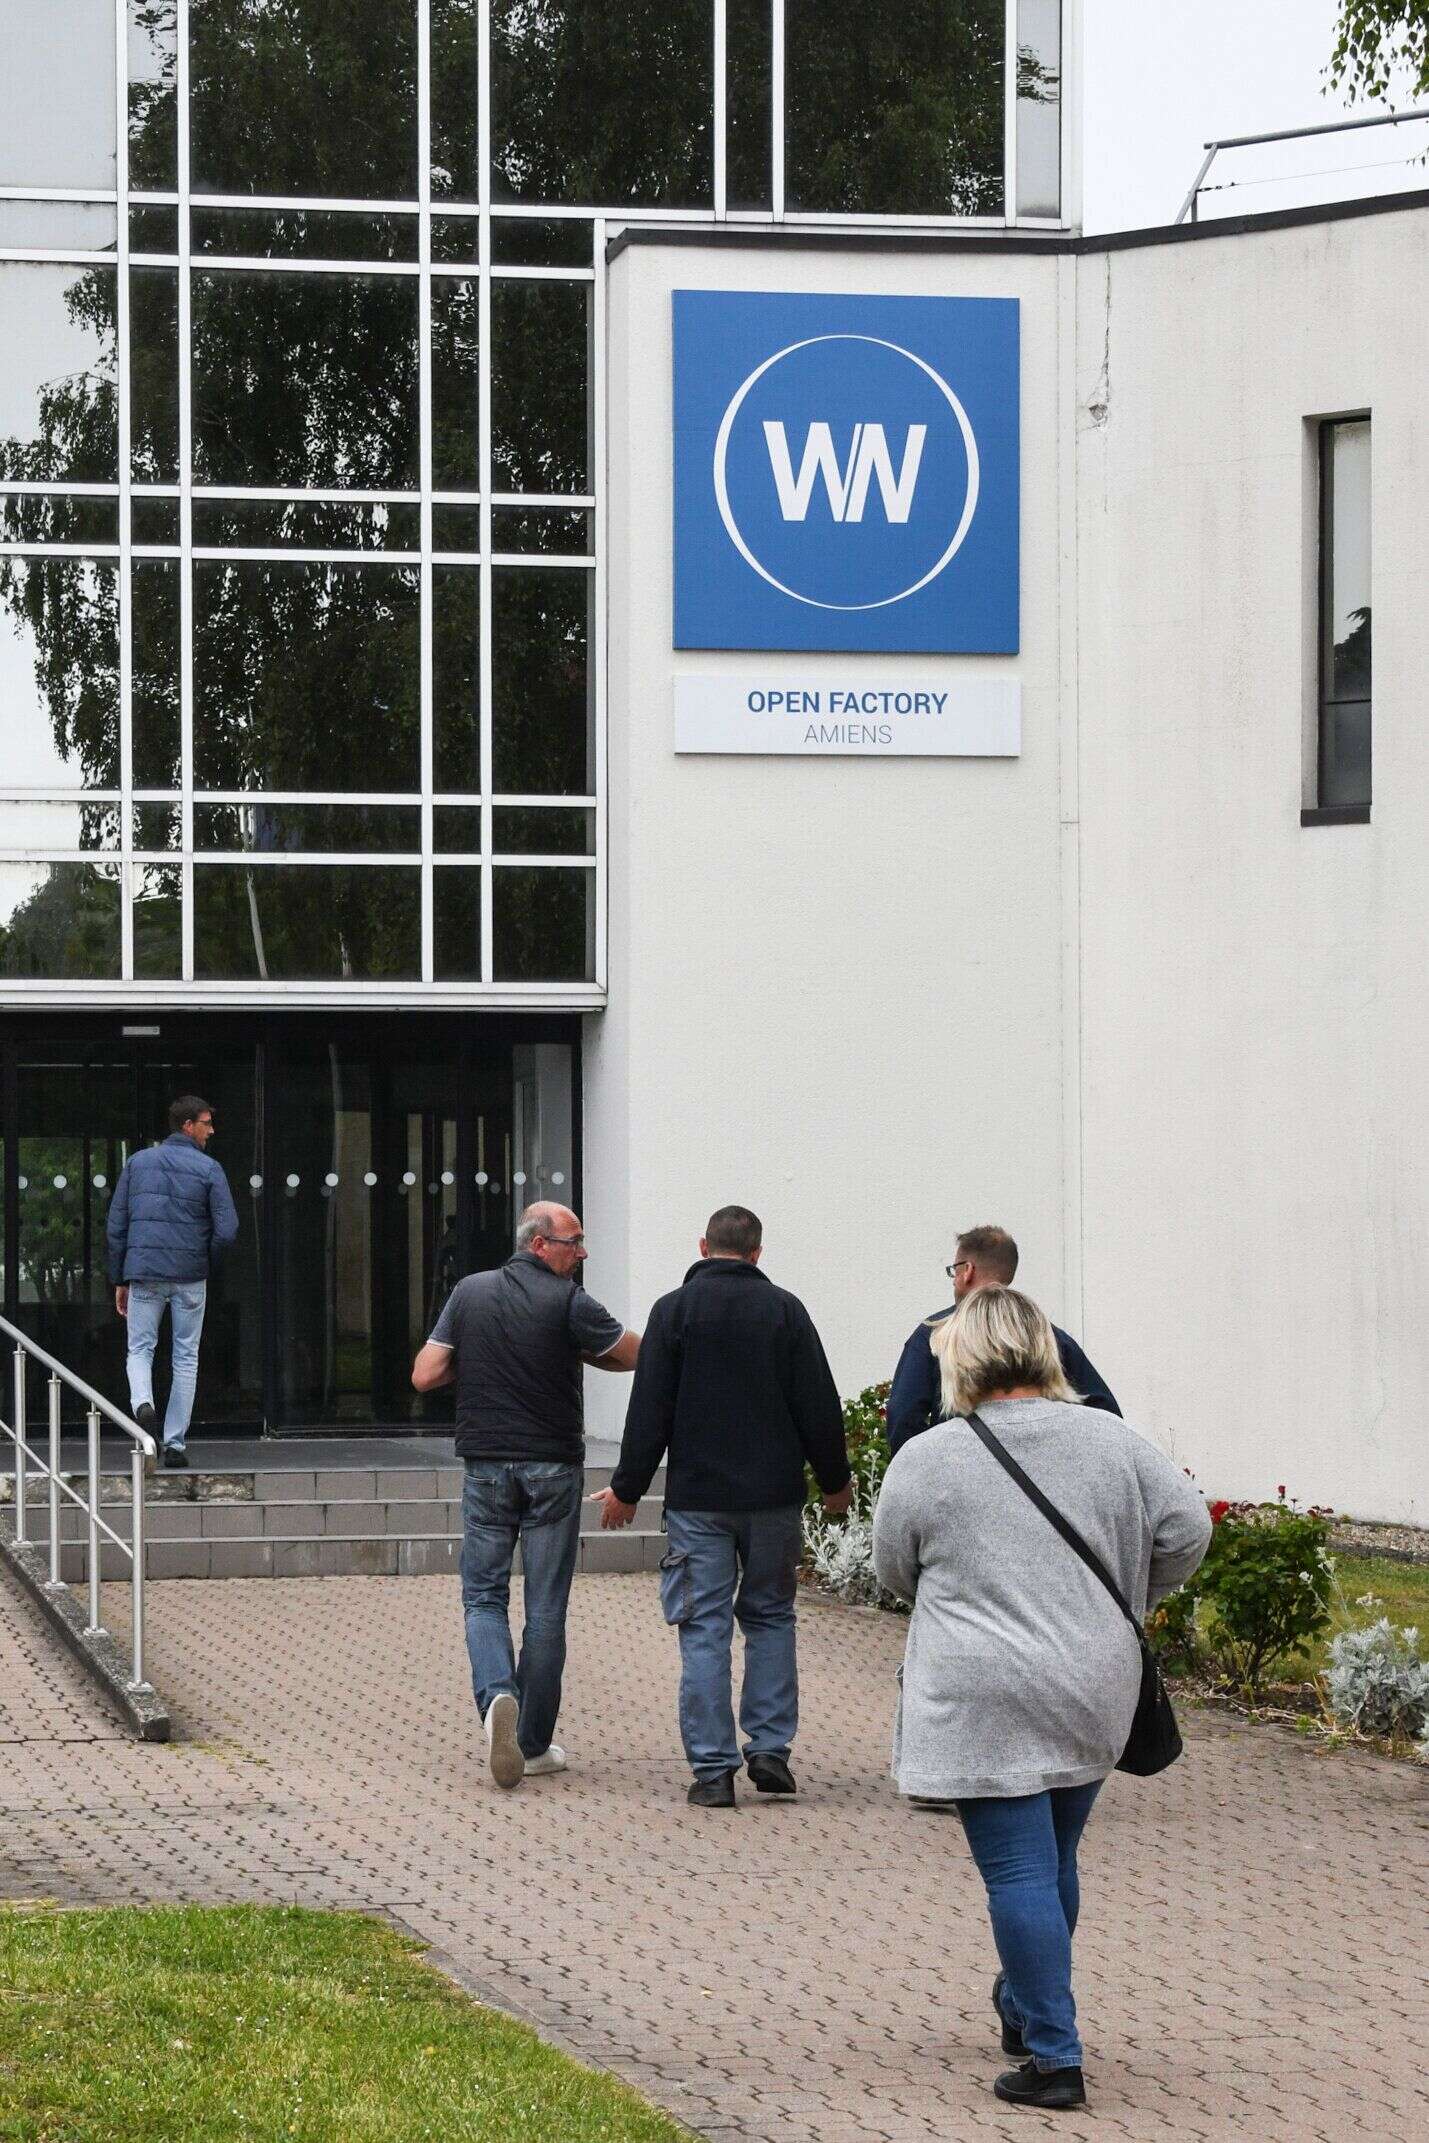 44 salariés de l'entreprise WN, qui avait repris le site de l'usine Whirlpool d'Amiens, vont être sauvés. Mais leurs 138 collègues se retrouvent sur le carreau.